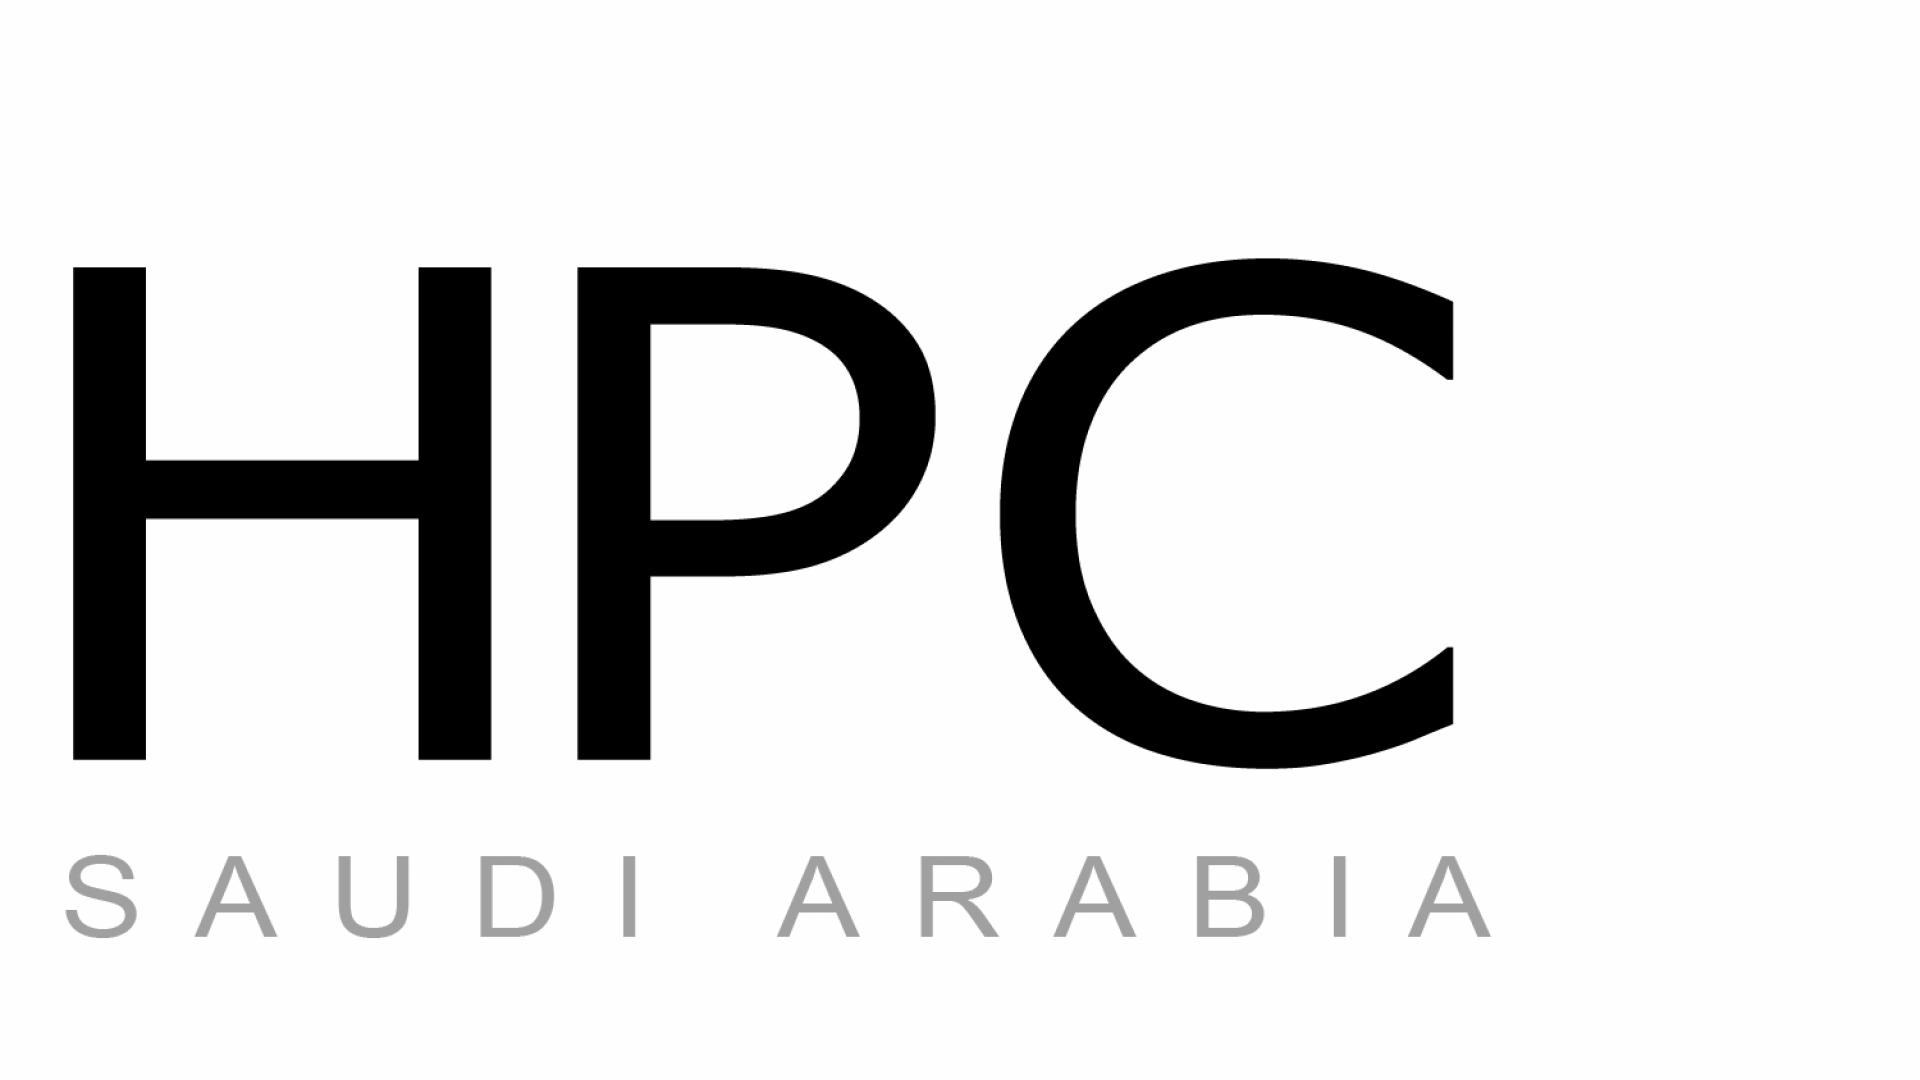 KAUST CEMSE ECRC SAHPC Conference